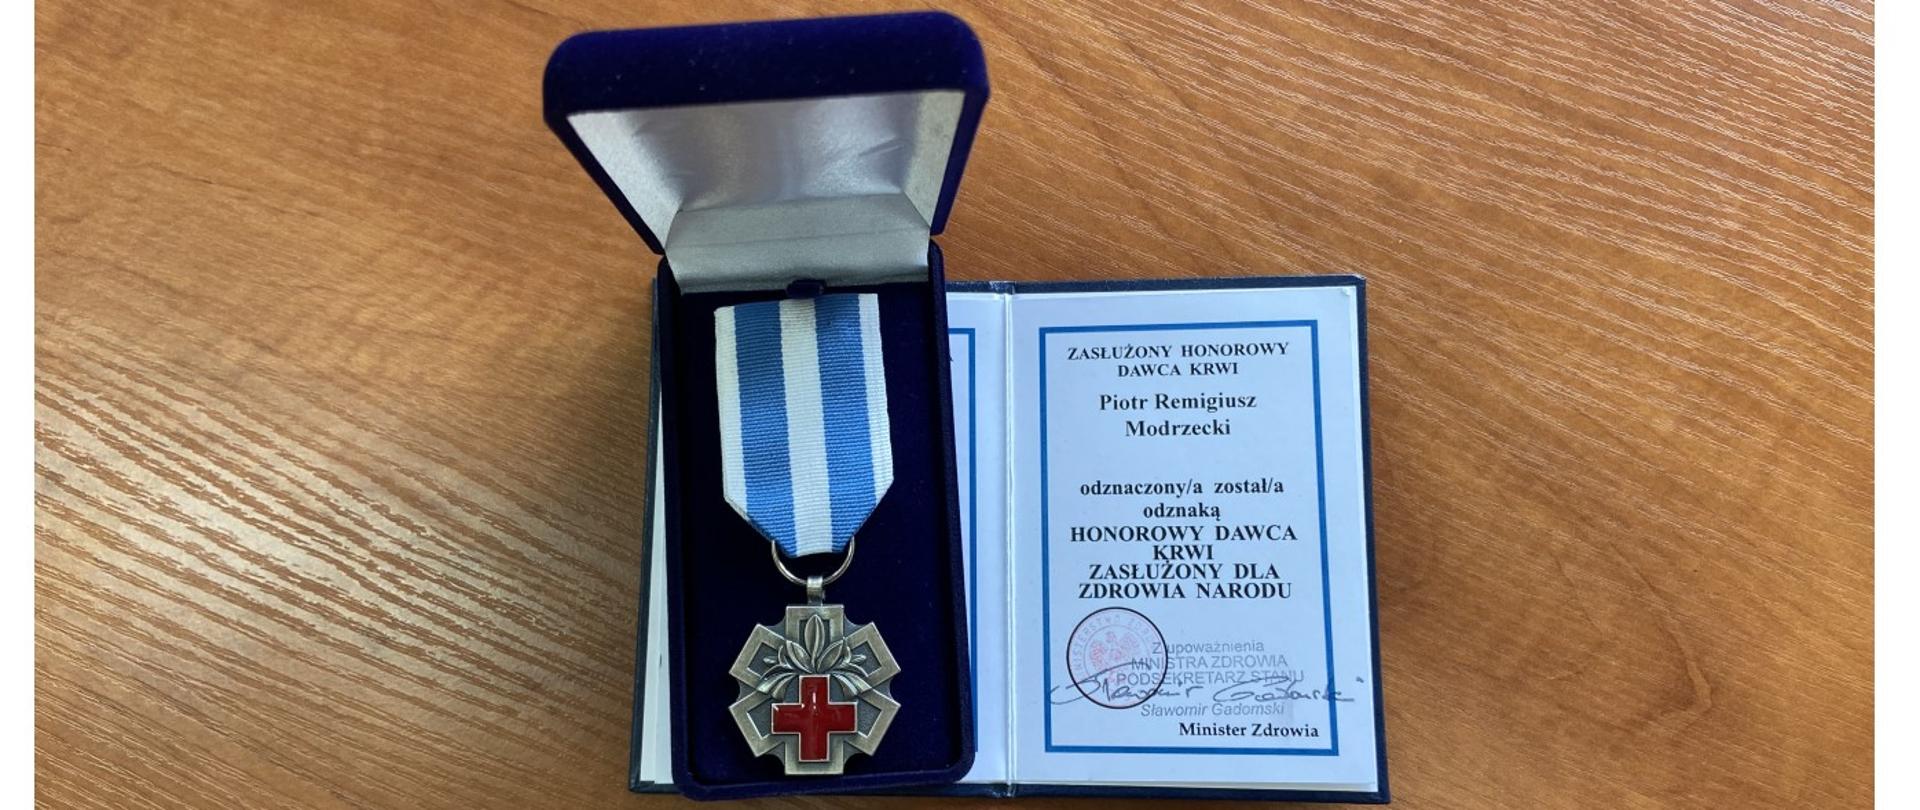 Odznaka Honorowy Dawca Krwi - Zasłużony dla Zdrowia Narodu